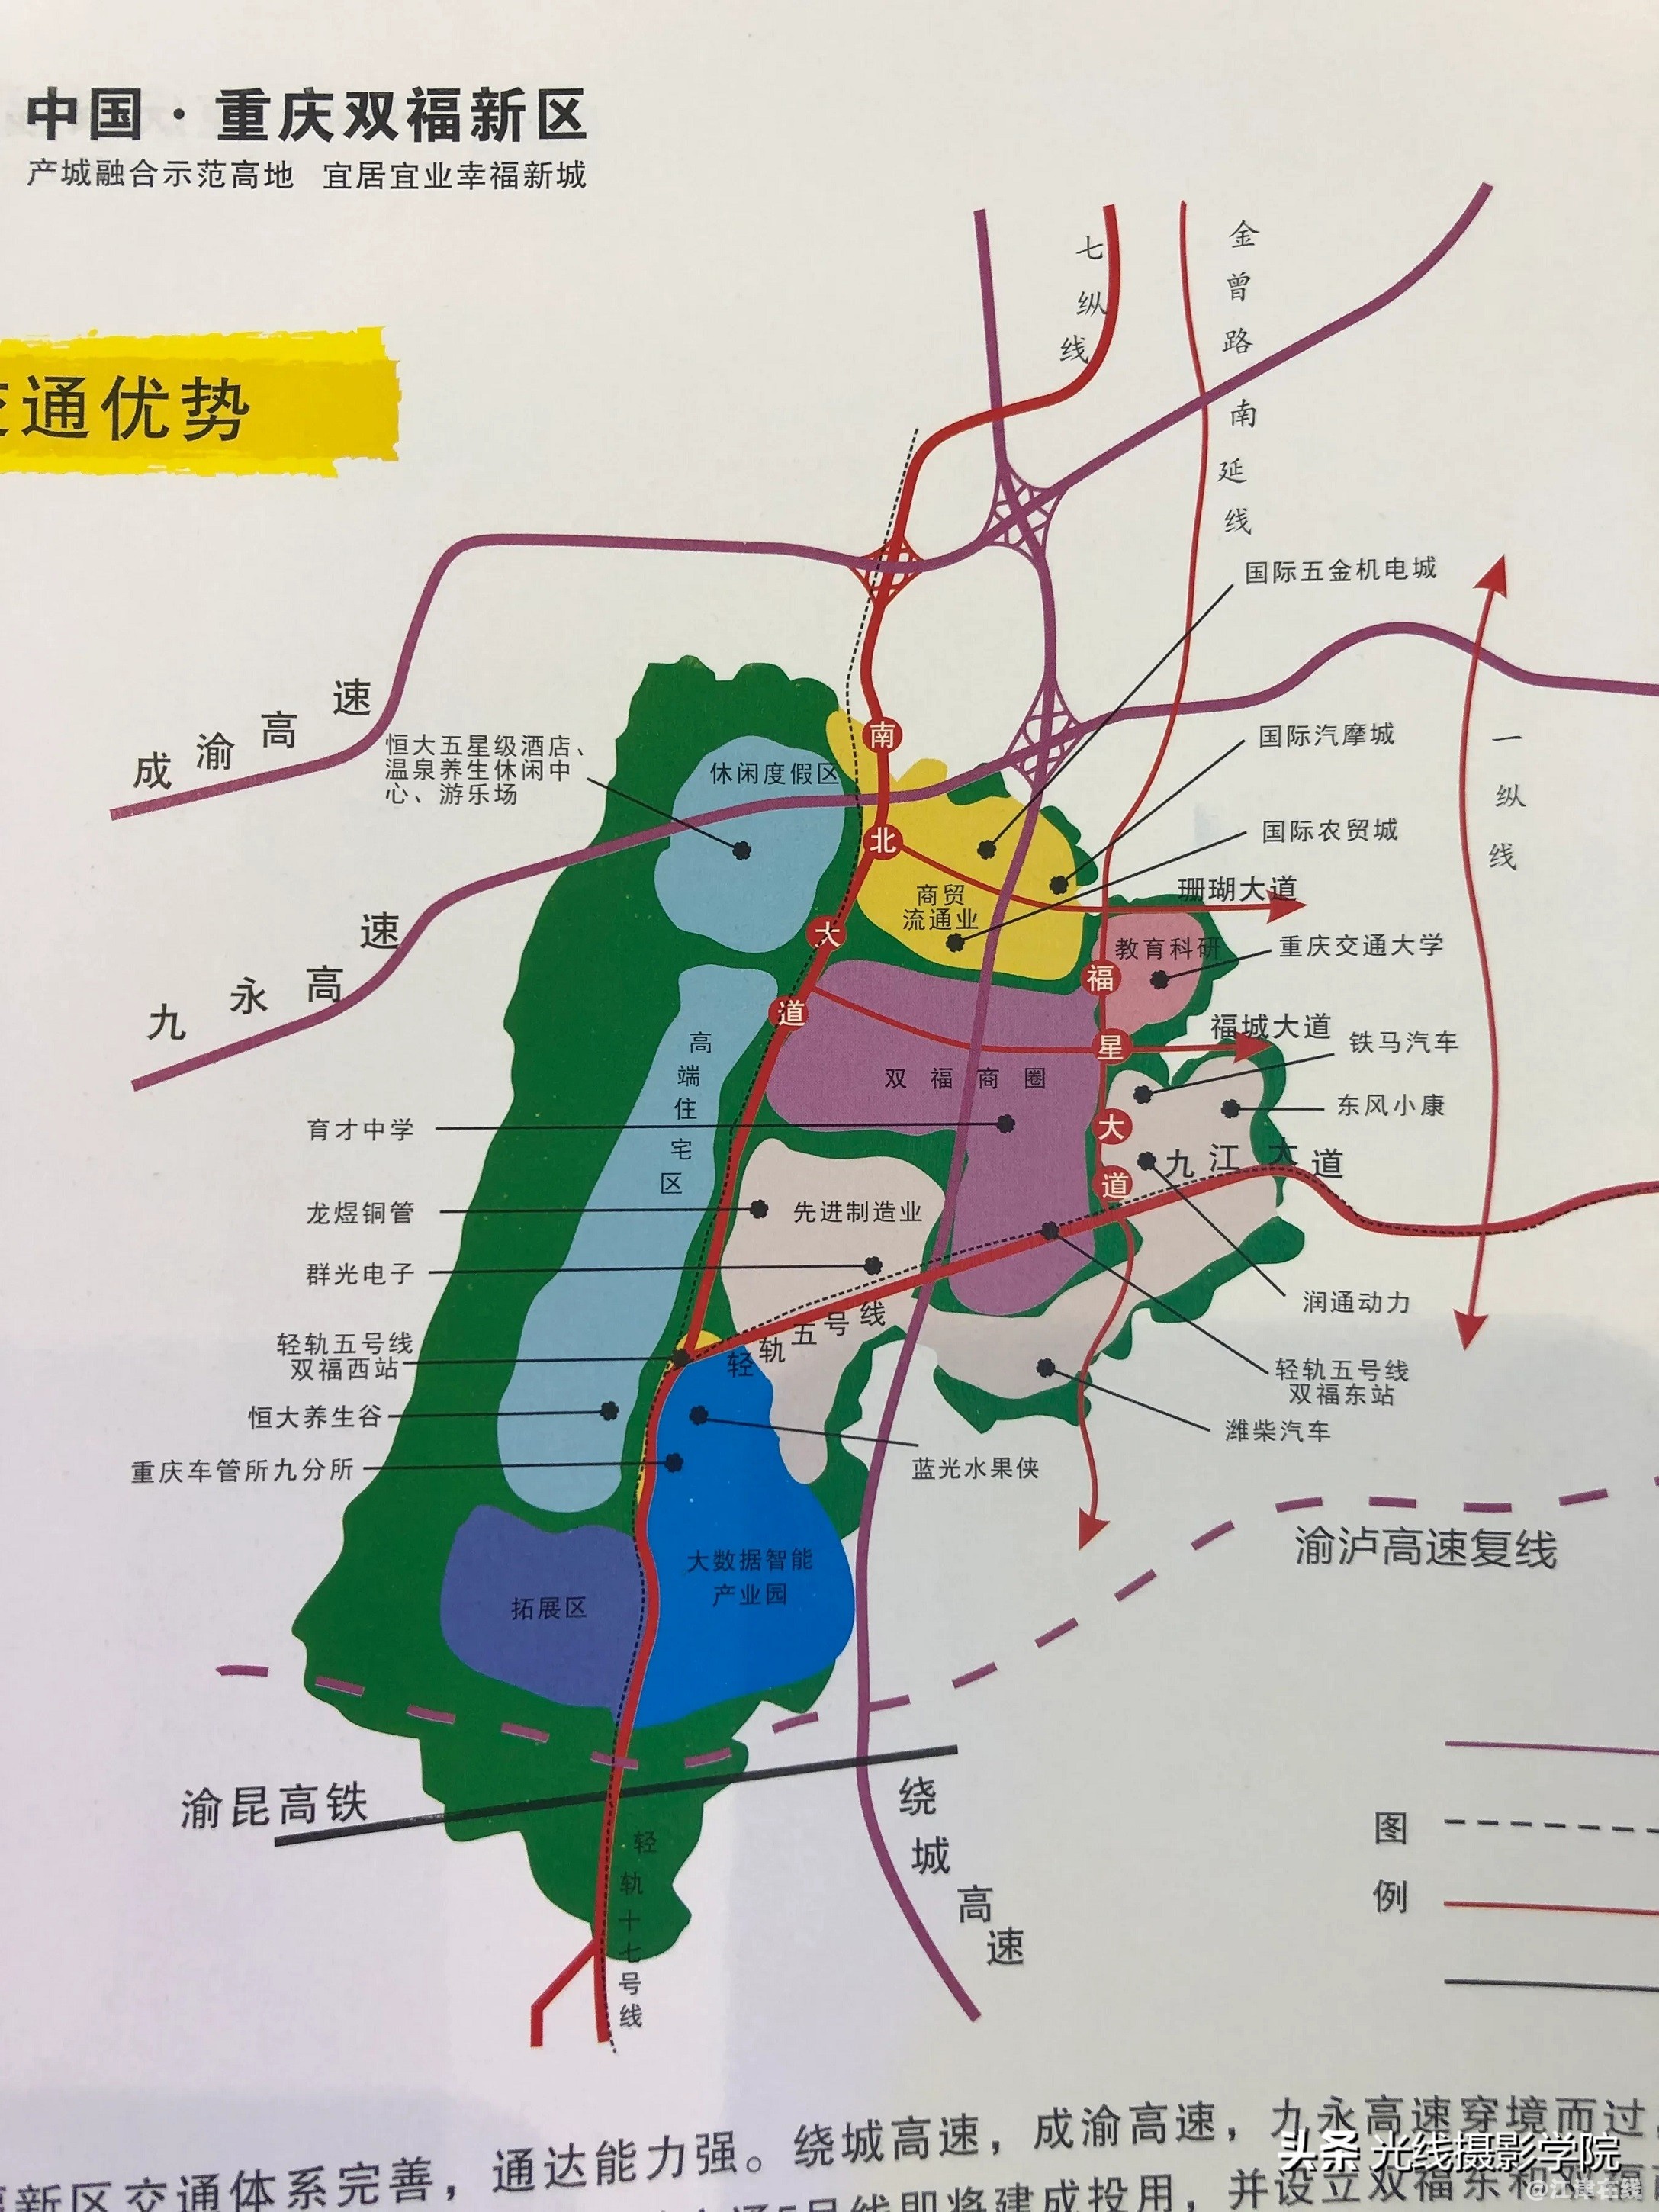 我去渝洽会参观了江津区的展台被双福新区的规划图所吸引了